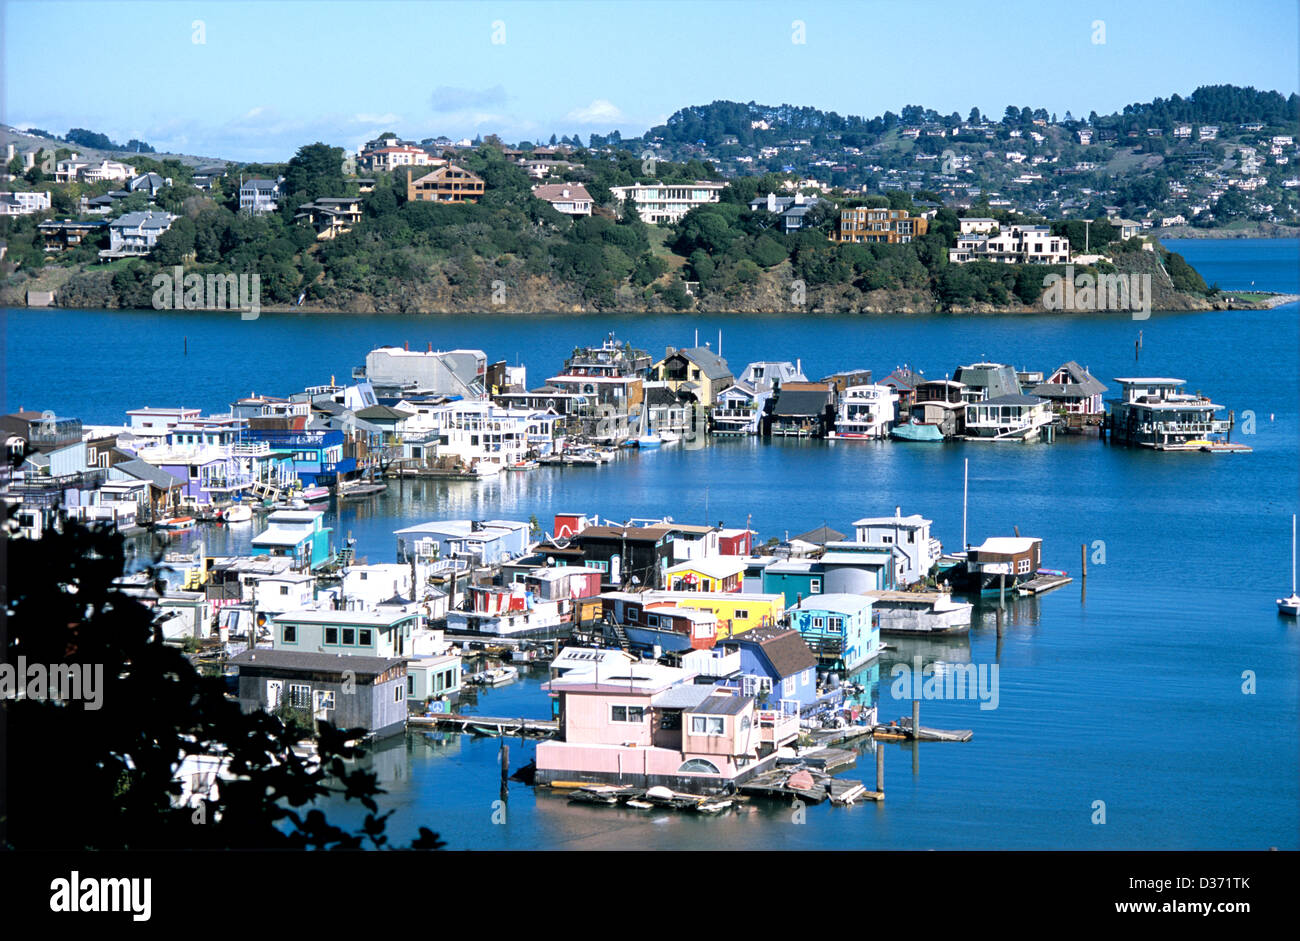 Casas flotantes se ancla en la Bahía de San Francisco Richardson Sausalito en el sur de Marin County California Foto de stock